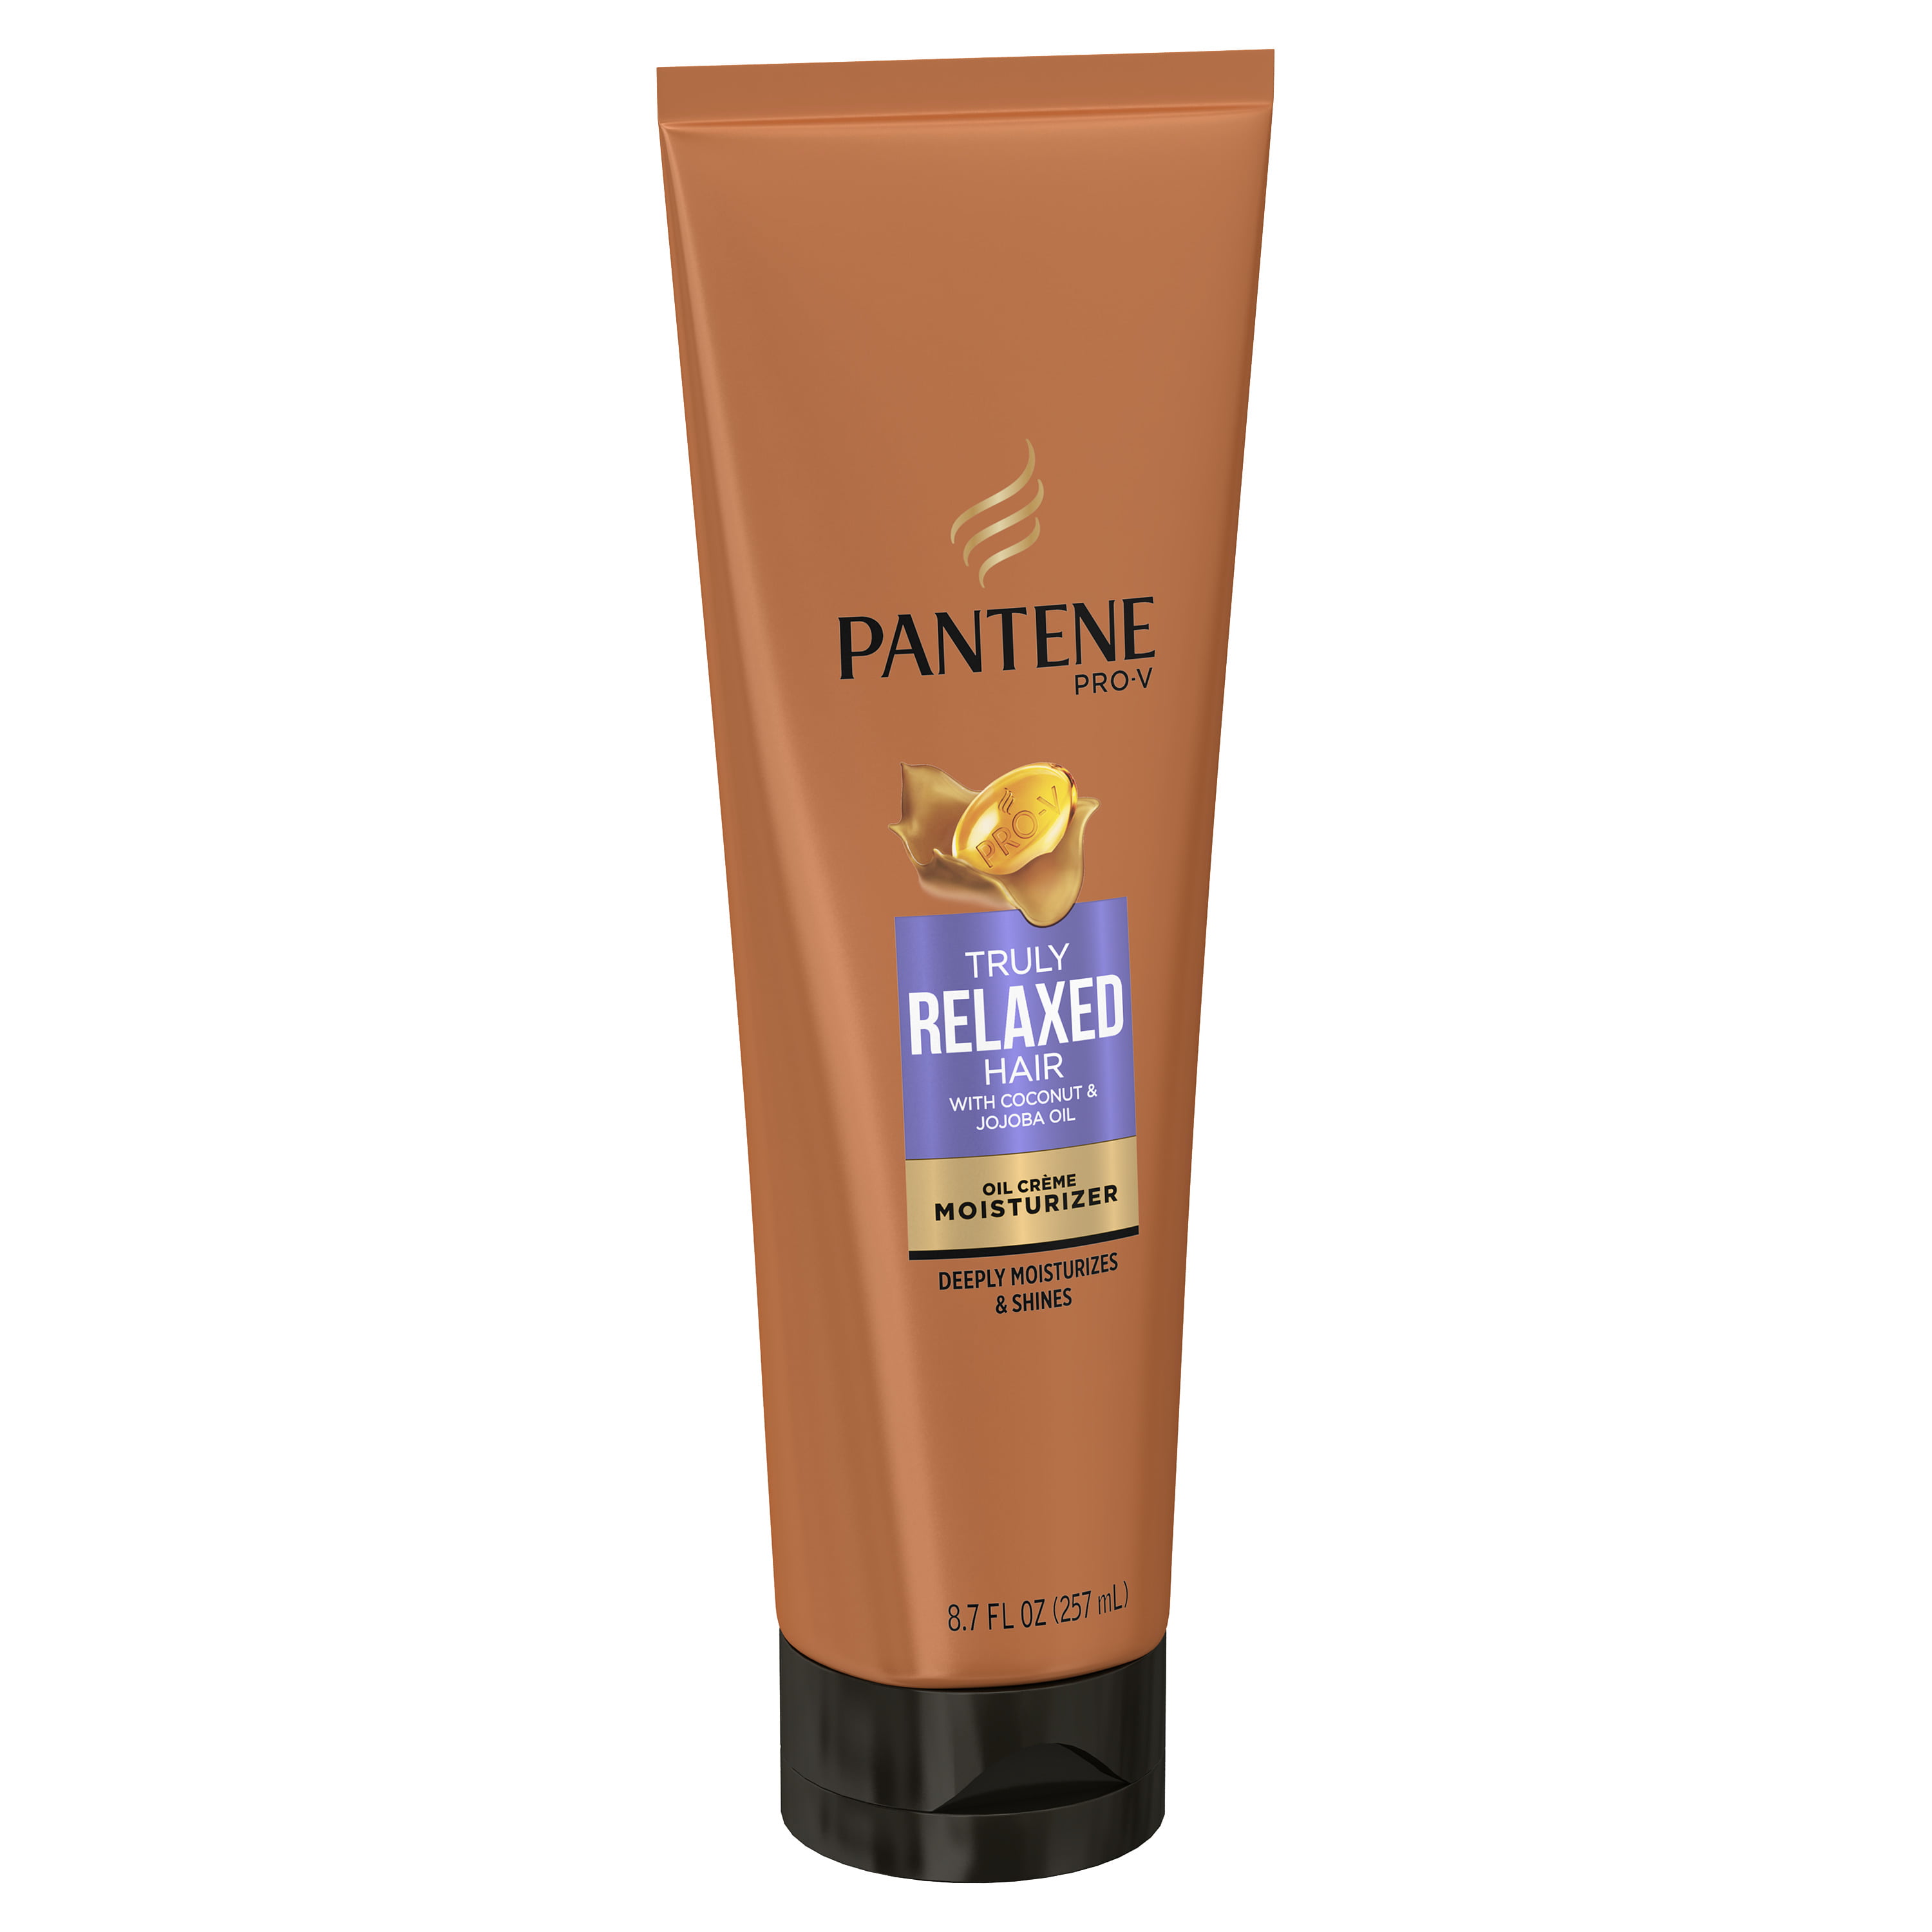 Pantene Pro V Truly Relaxed Hair Oil Cream Moisturizer 8 7 Fl Oz